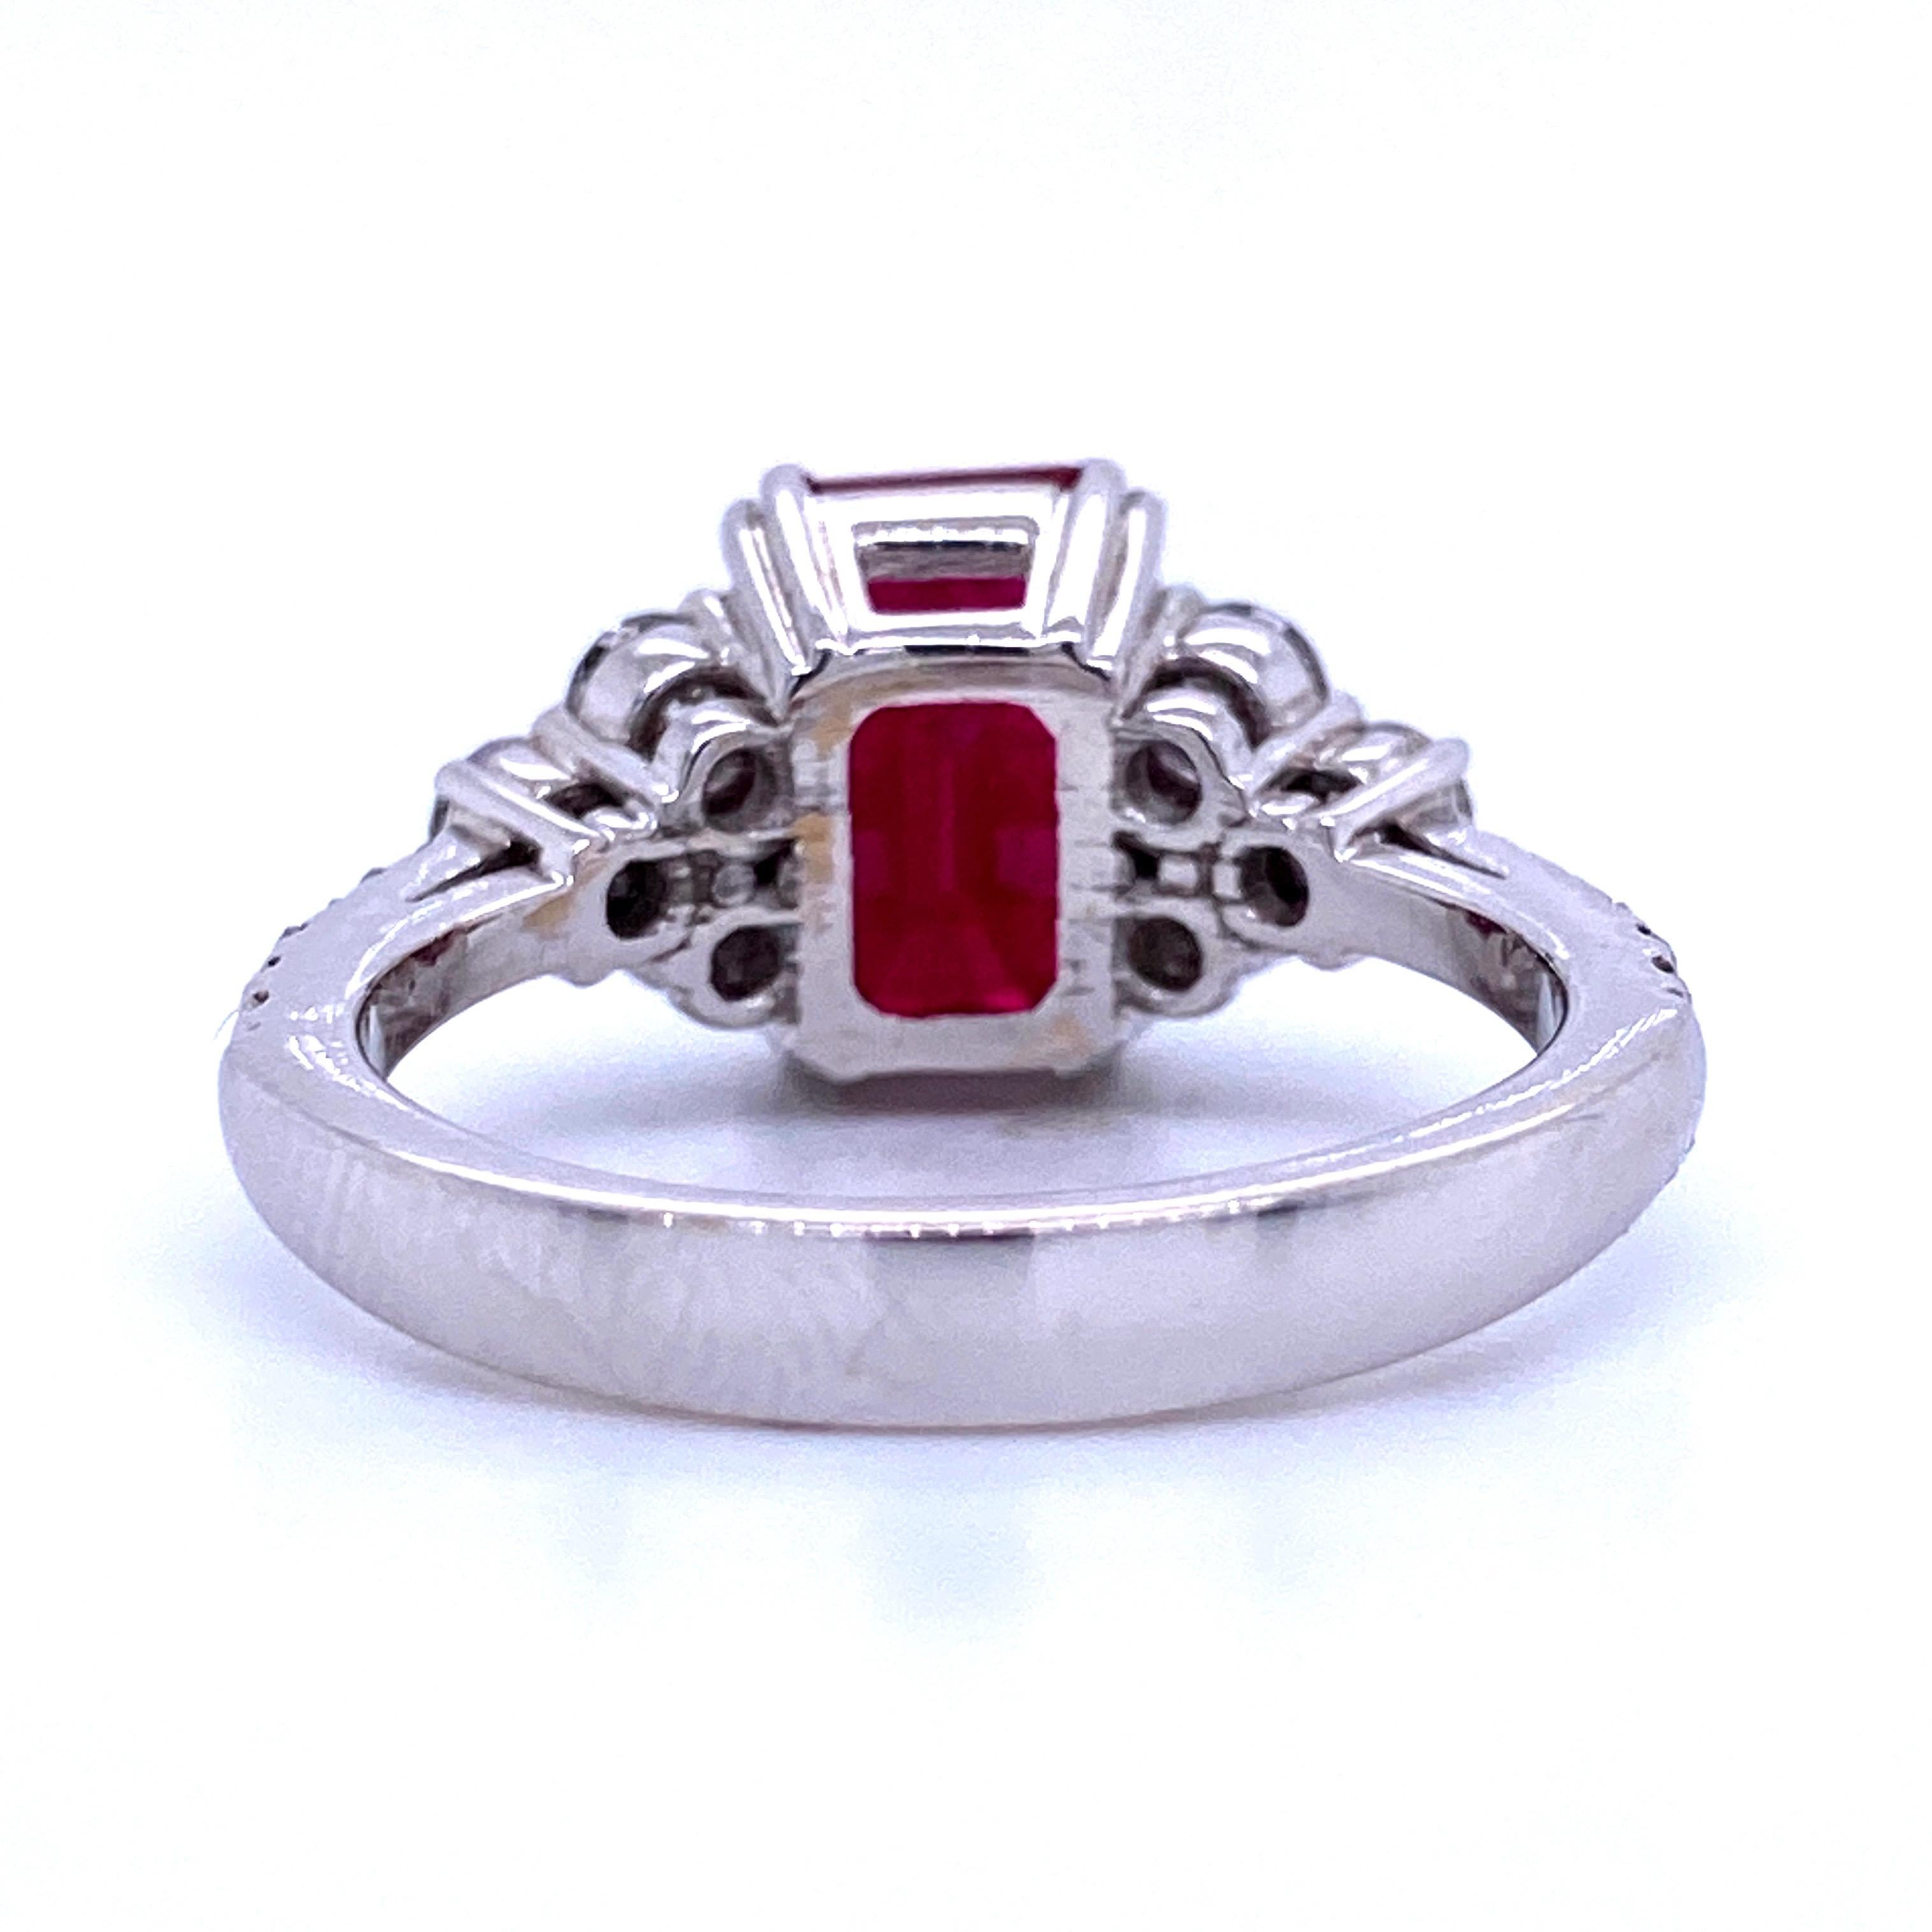 Burma Ruby Diamond Ring 4.79 Carat AGL Certified 18 Karat White Gold 3